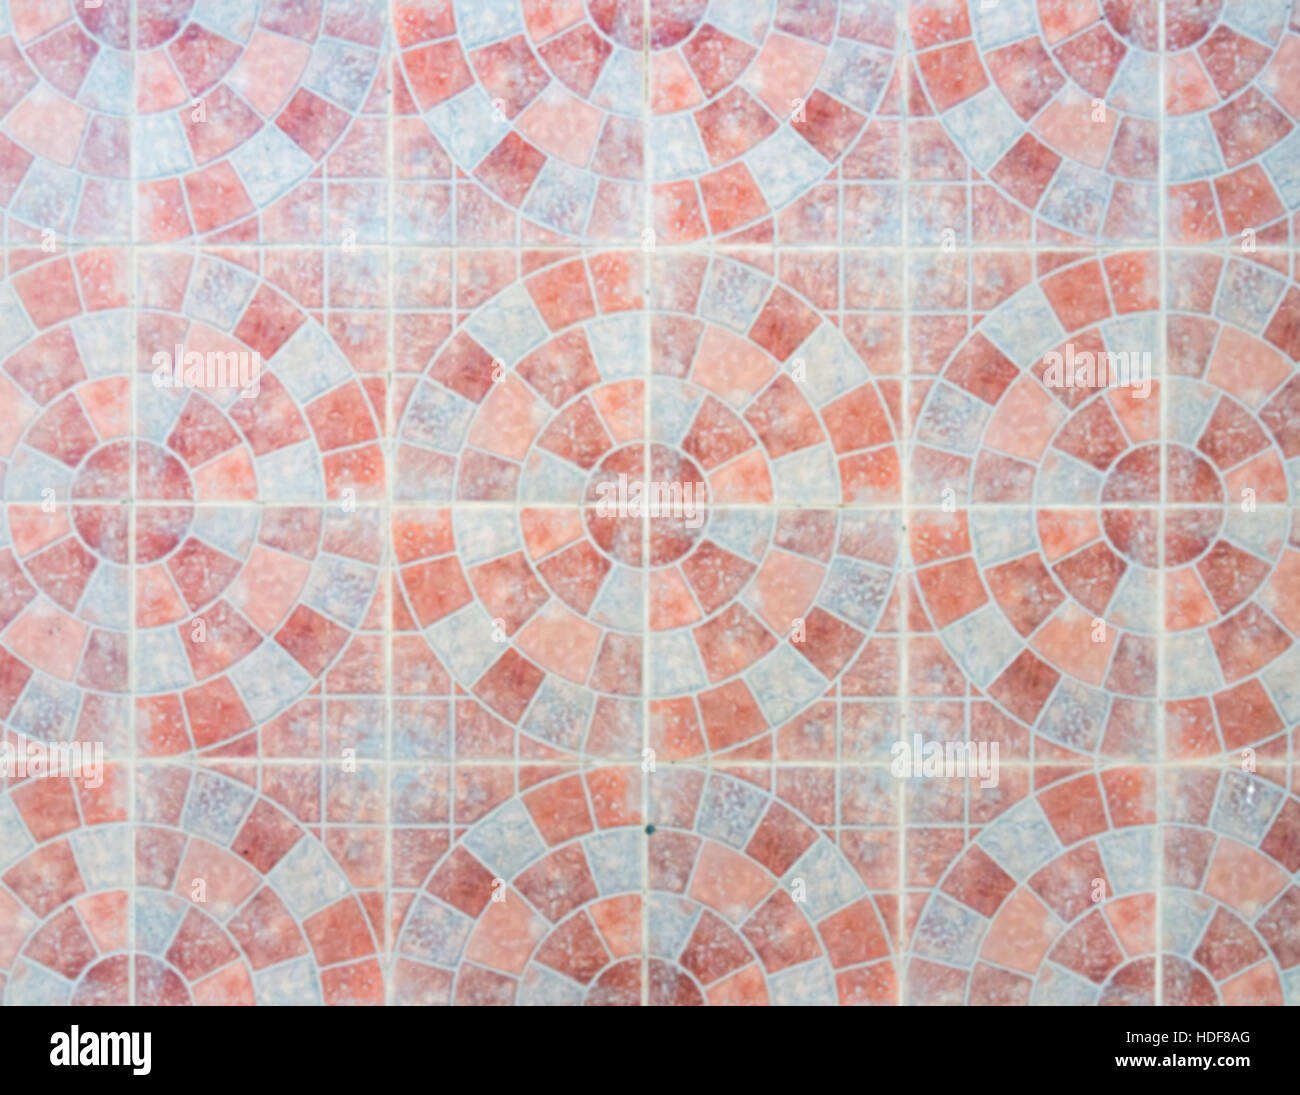 Kreis-Fußboden-Fliese mit Unschärfe Fokus in die Pflasterung des städtischen Parks. () Stockfoto